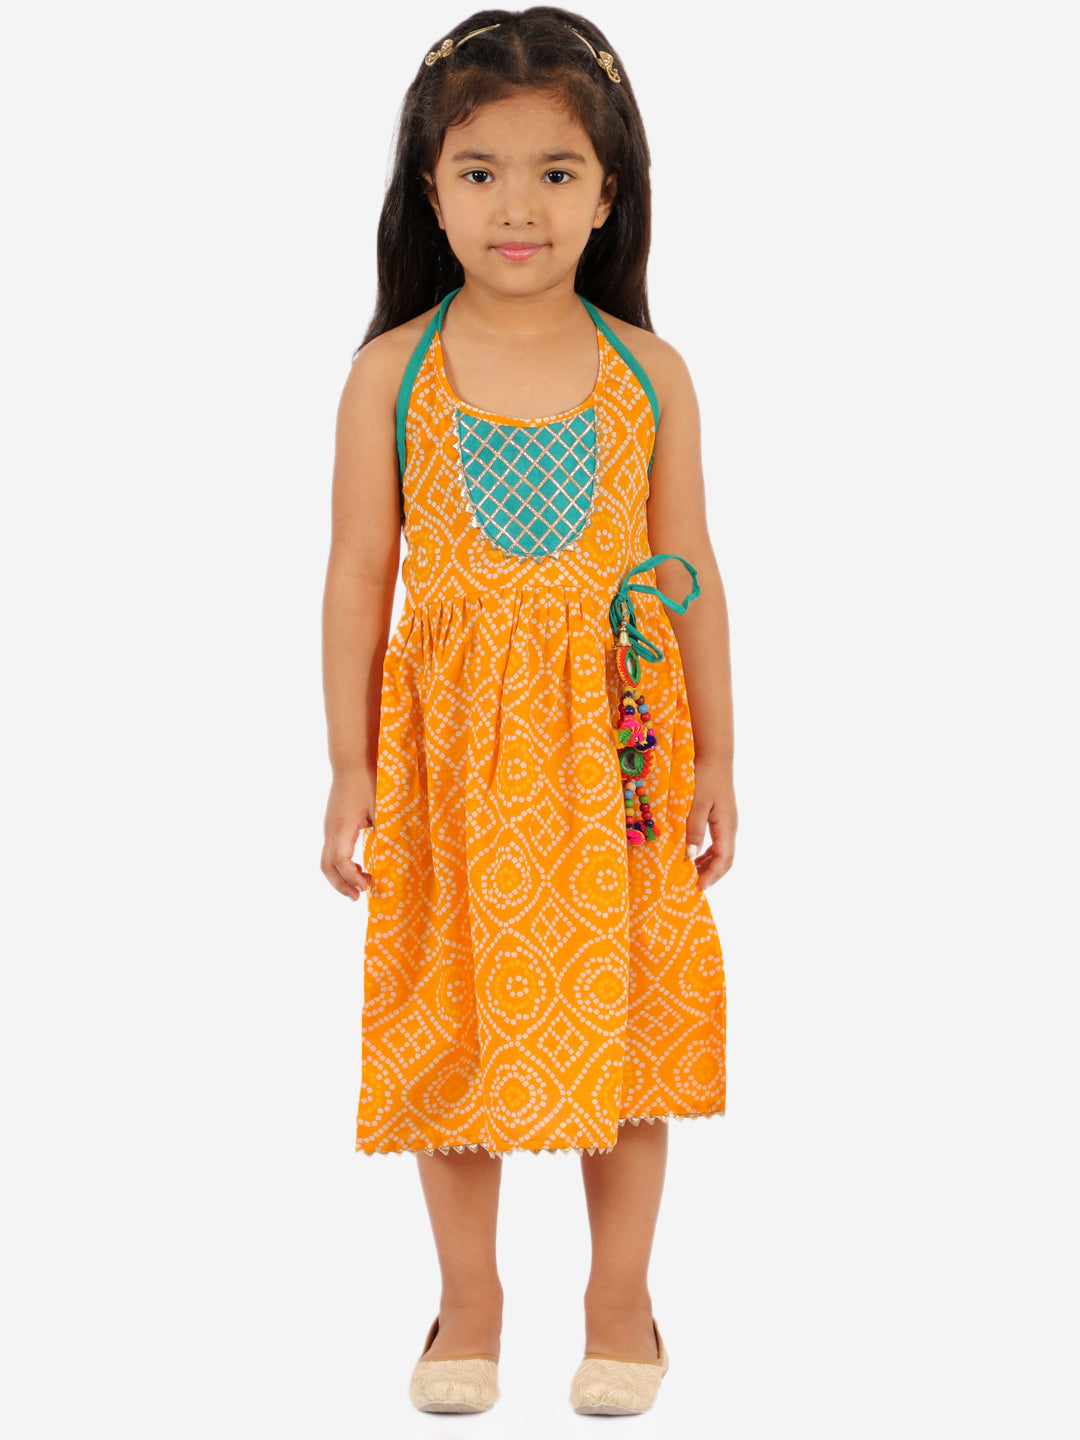 Bandhani Dress for Girls -  KID1 Girls